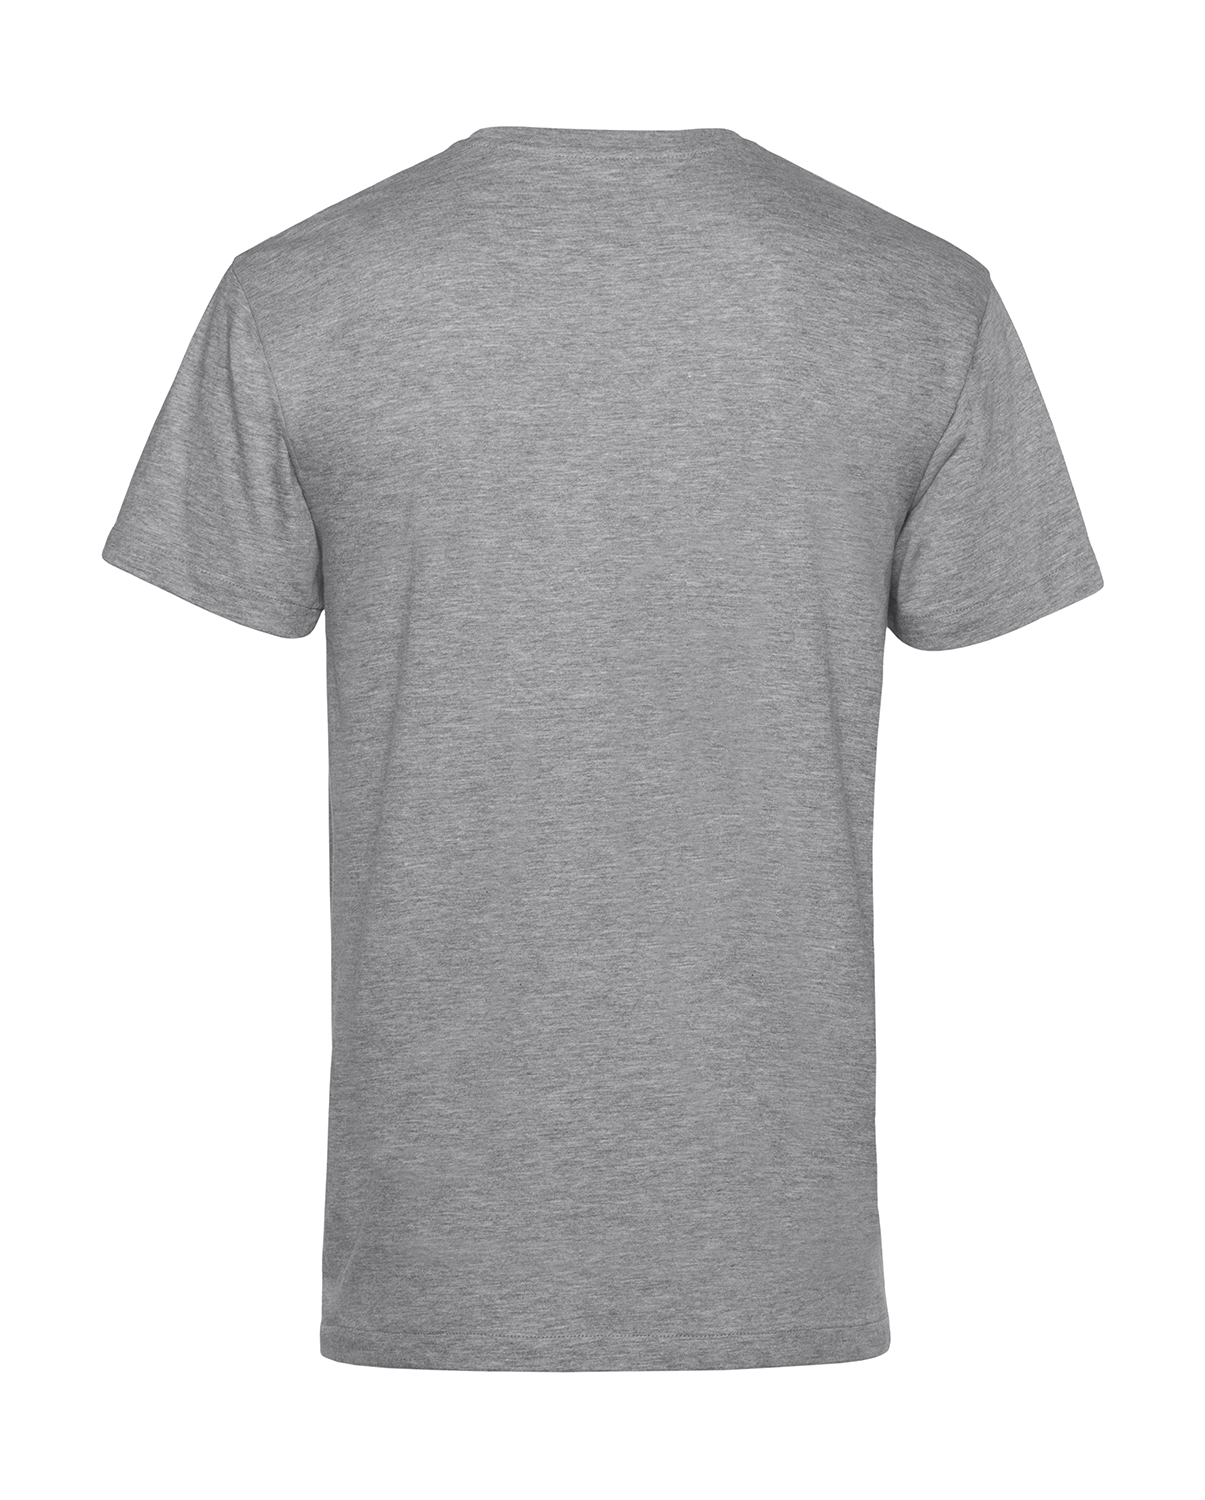 Unisex tričko Organic inspire Velikost: 4XL, Barva: Šedivá